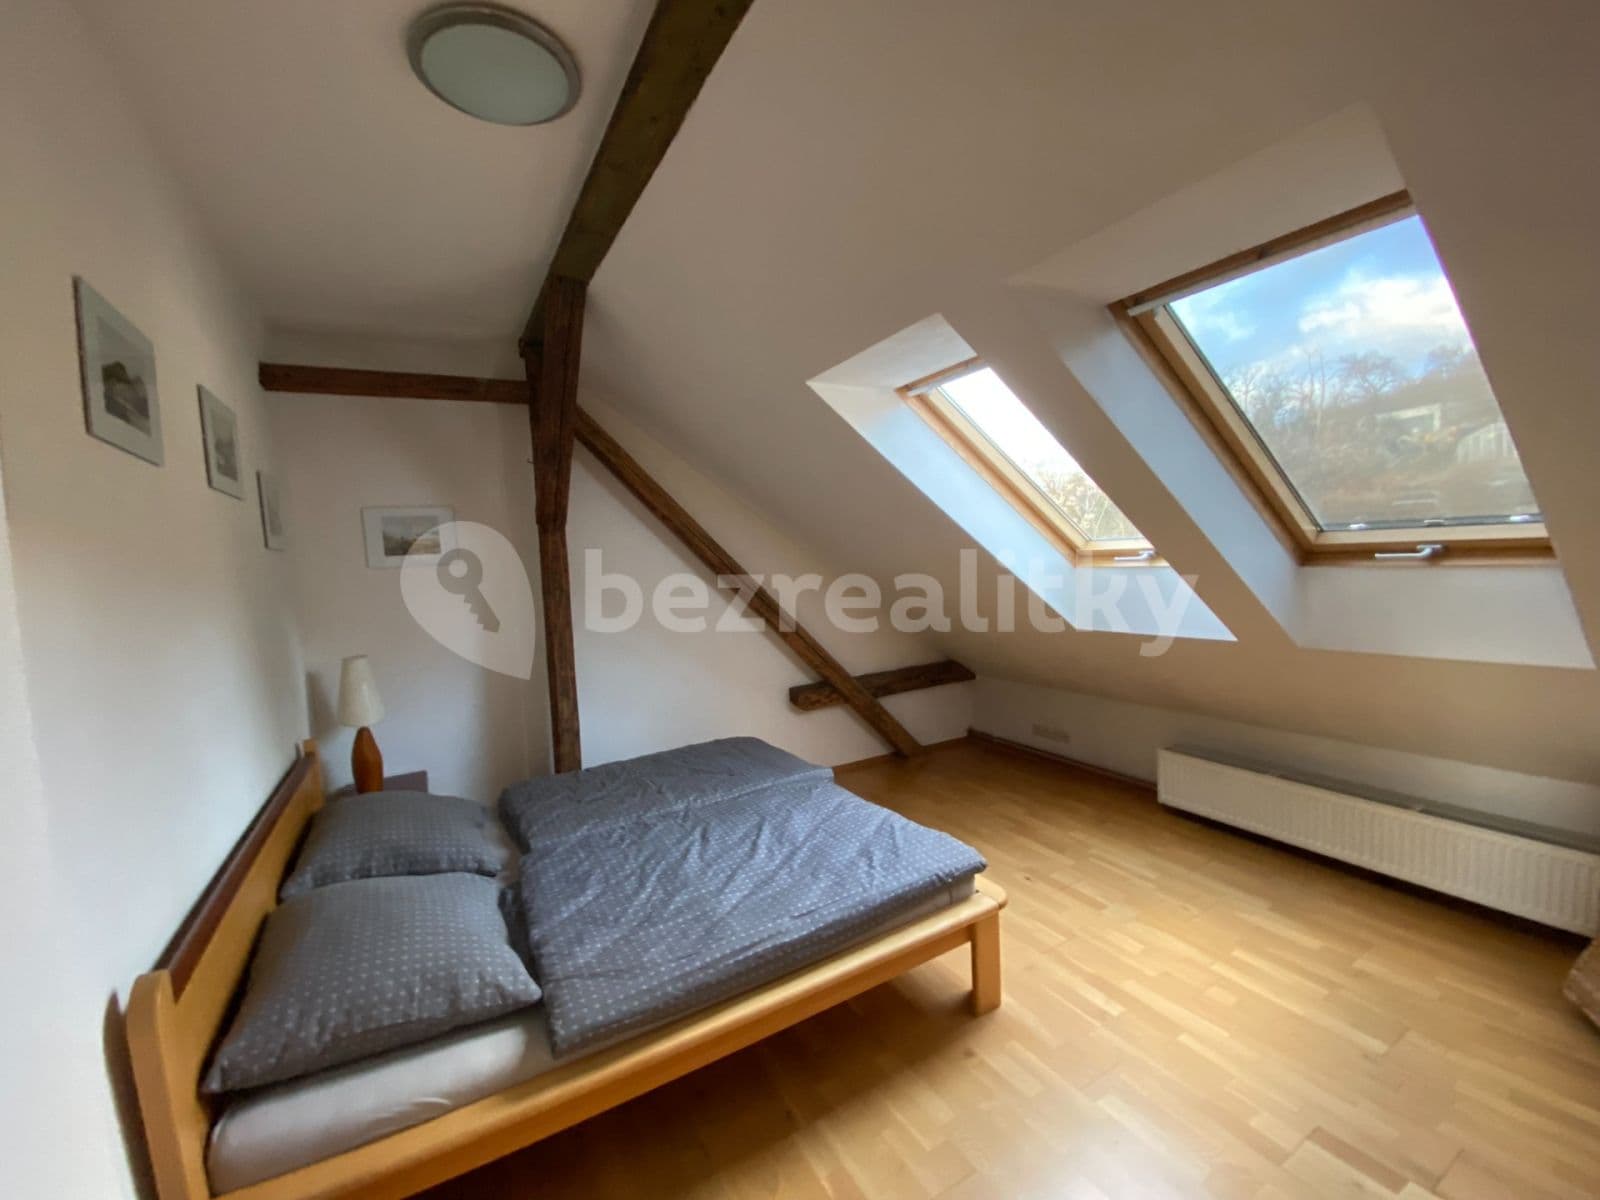 1 bedroom with open-plan kitchen flat to rent, 82 m², Viniční, Brno, Jihomoravský Region